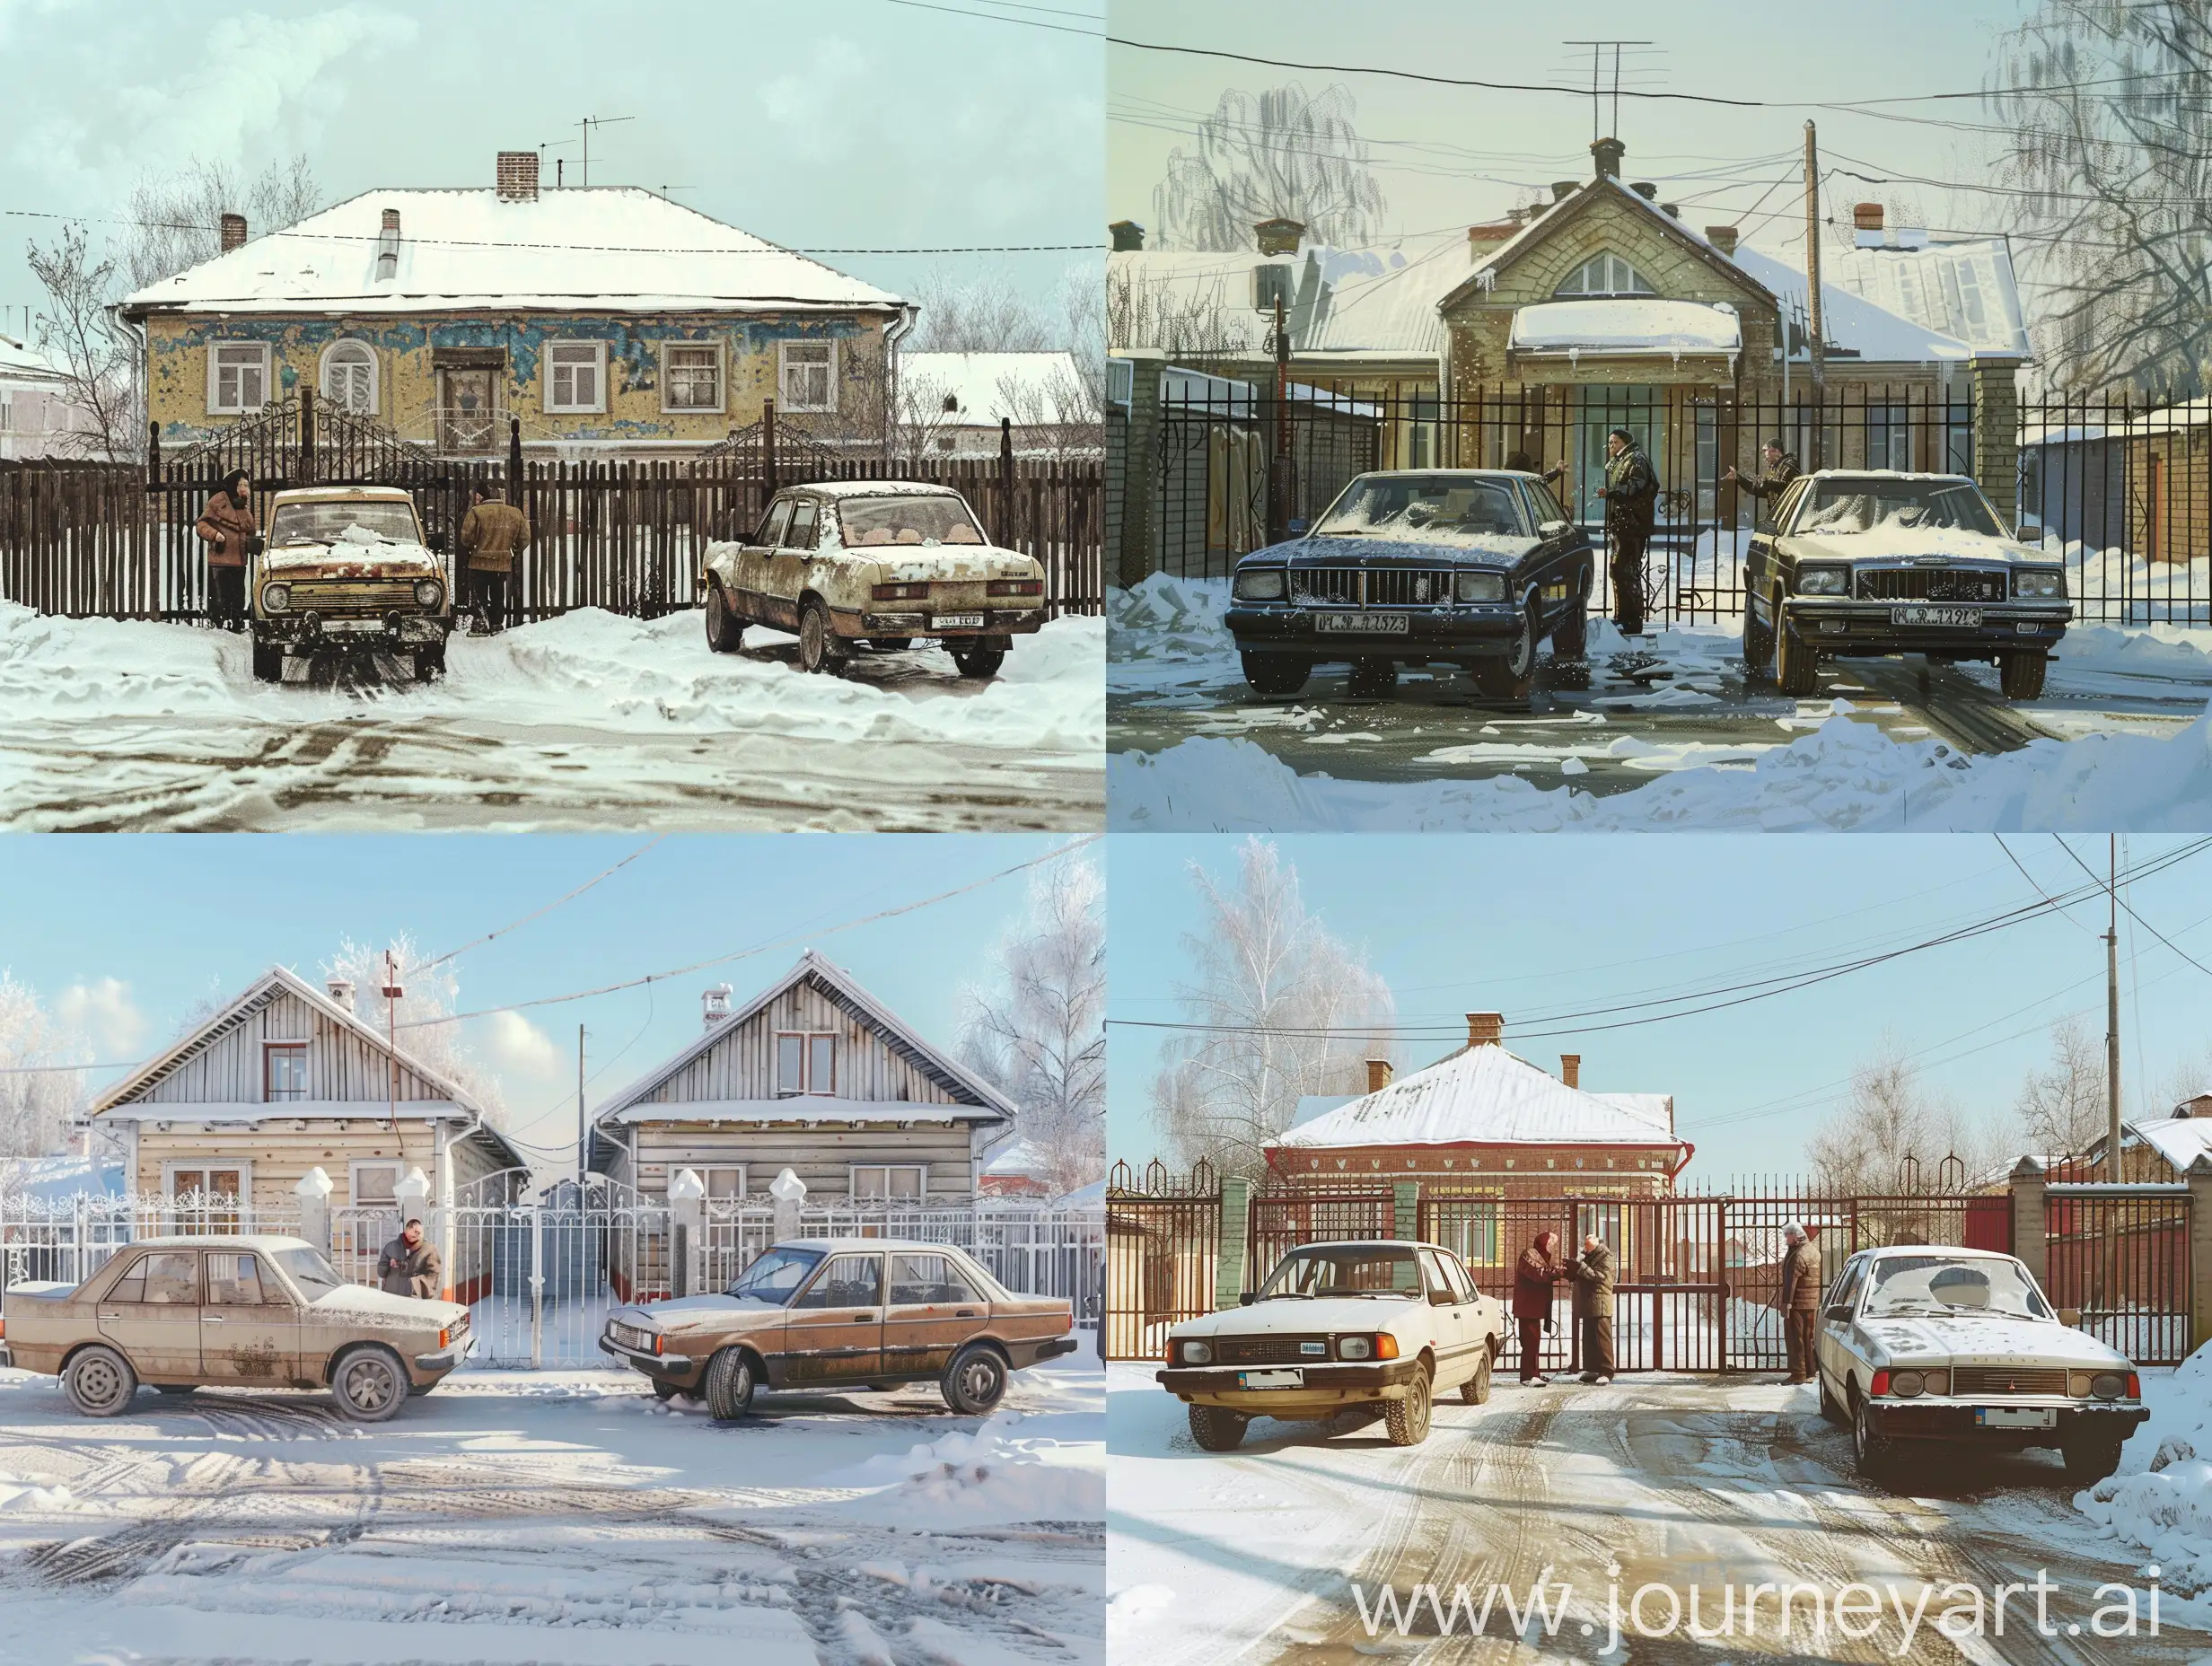 Сибирский дом, забор, яркий зимний полдень. Перед воротами припаркованы два автомобиля, по бокам от автомобилей стоят их водители и жарко спорят  друг с другом. Фотореализм,  настроение легкое и веселое.